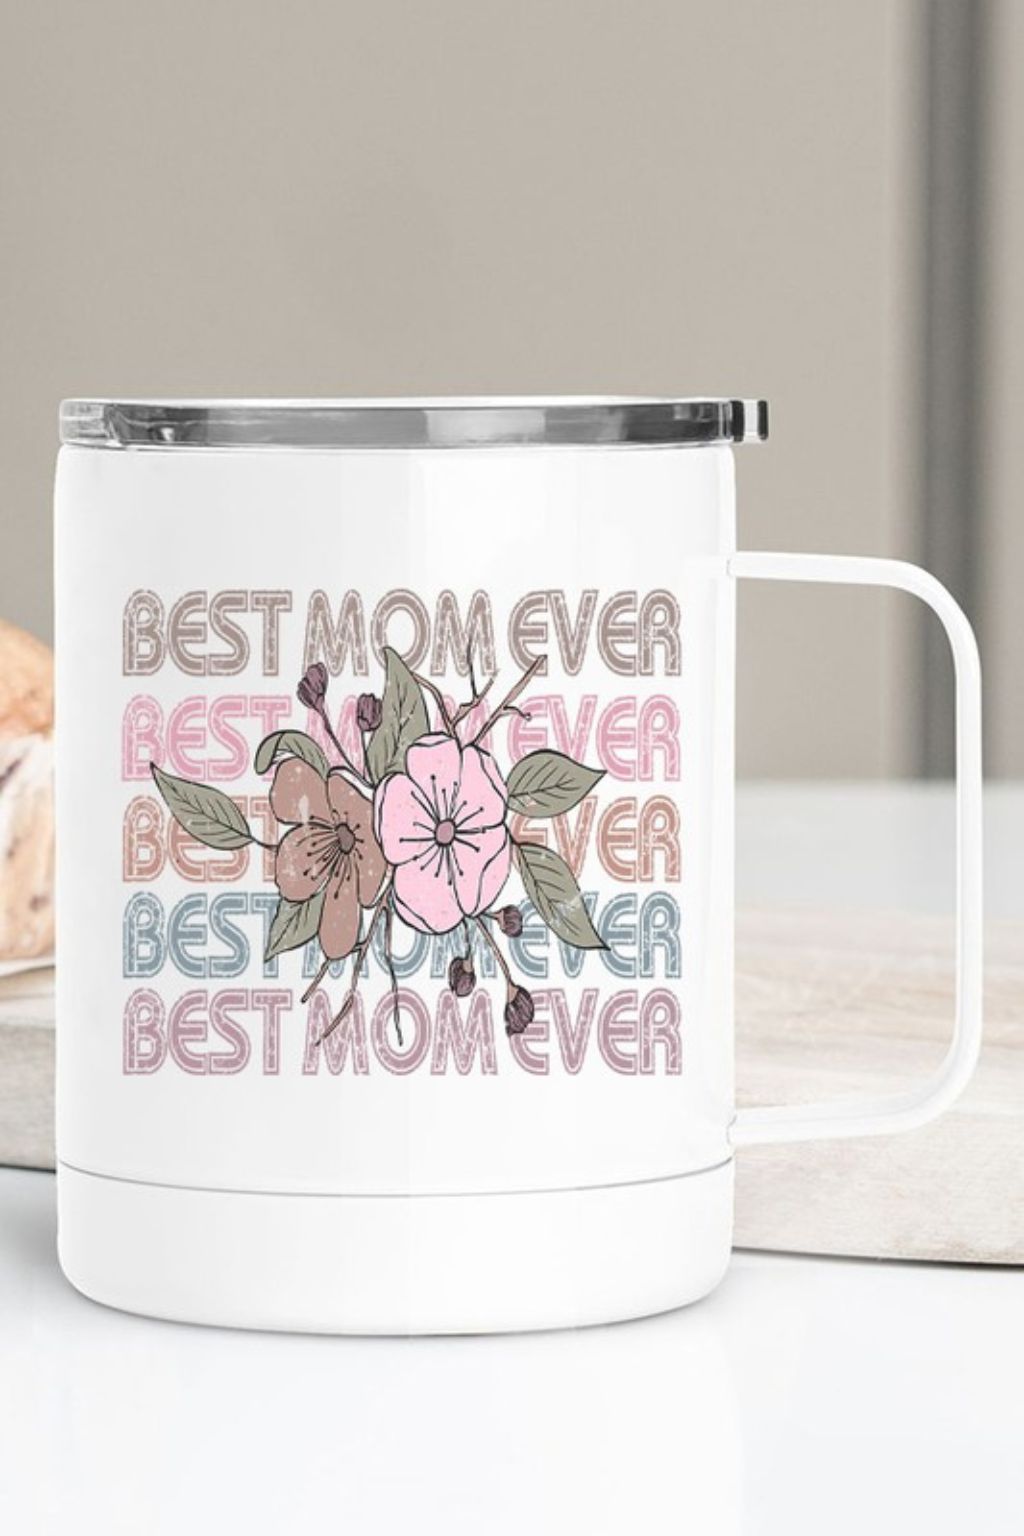 Best Mom Ever Stainless Steel Travel Mug